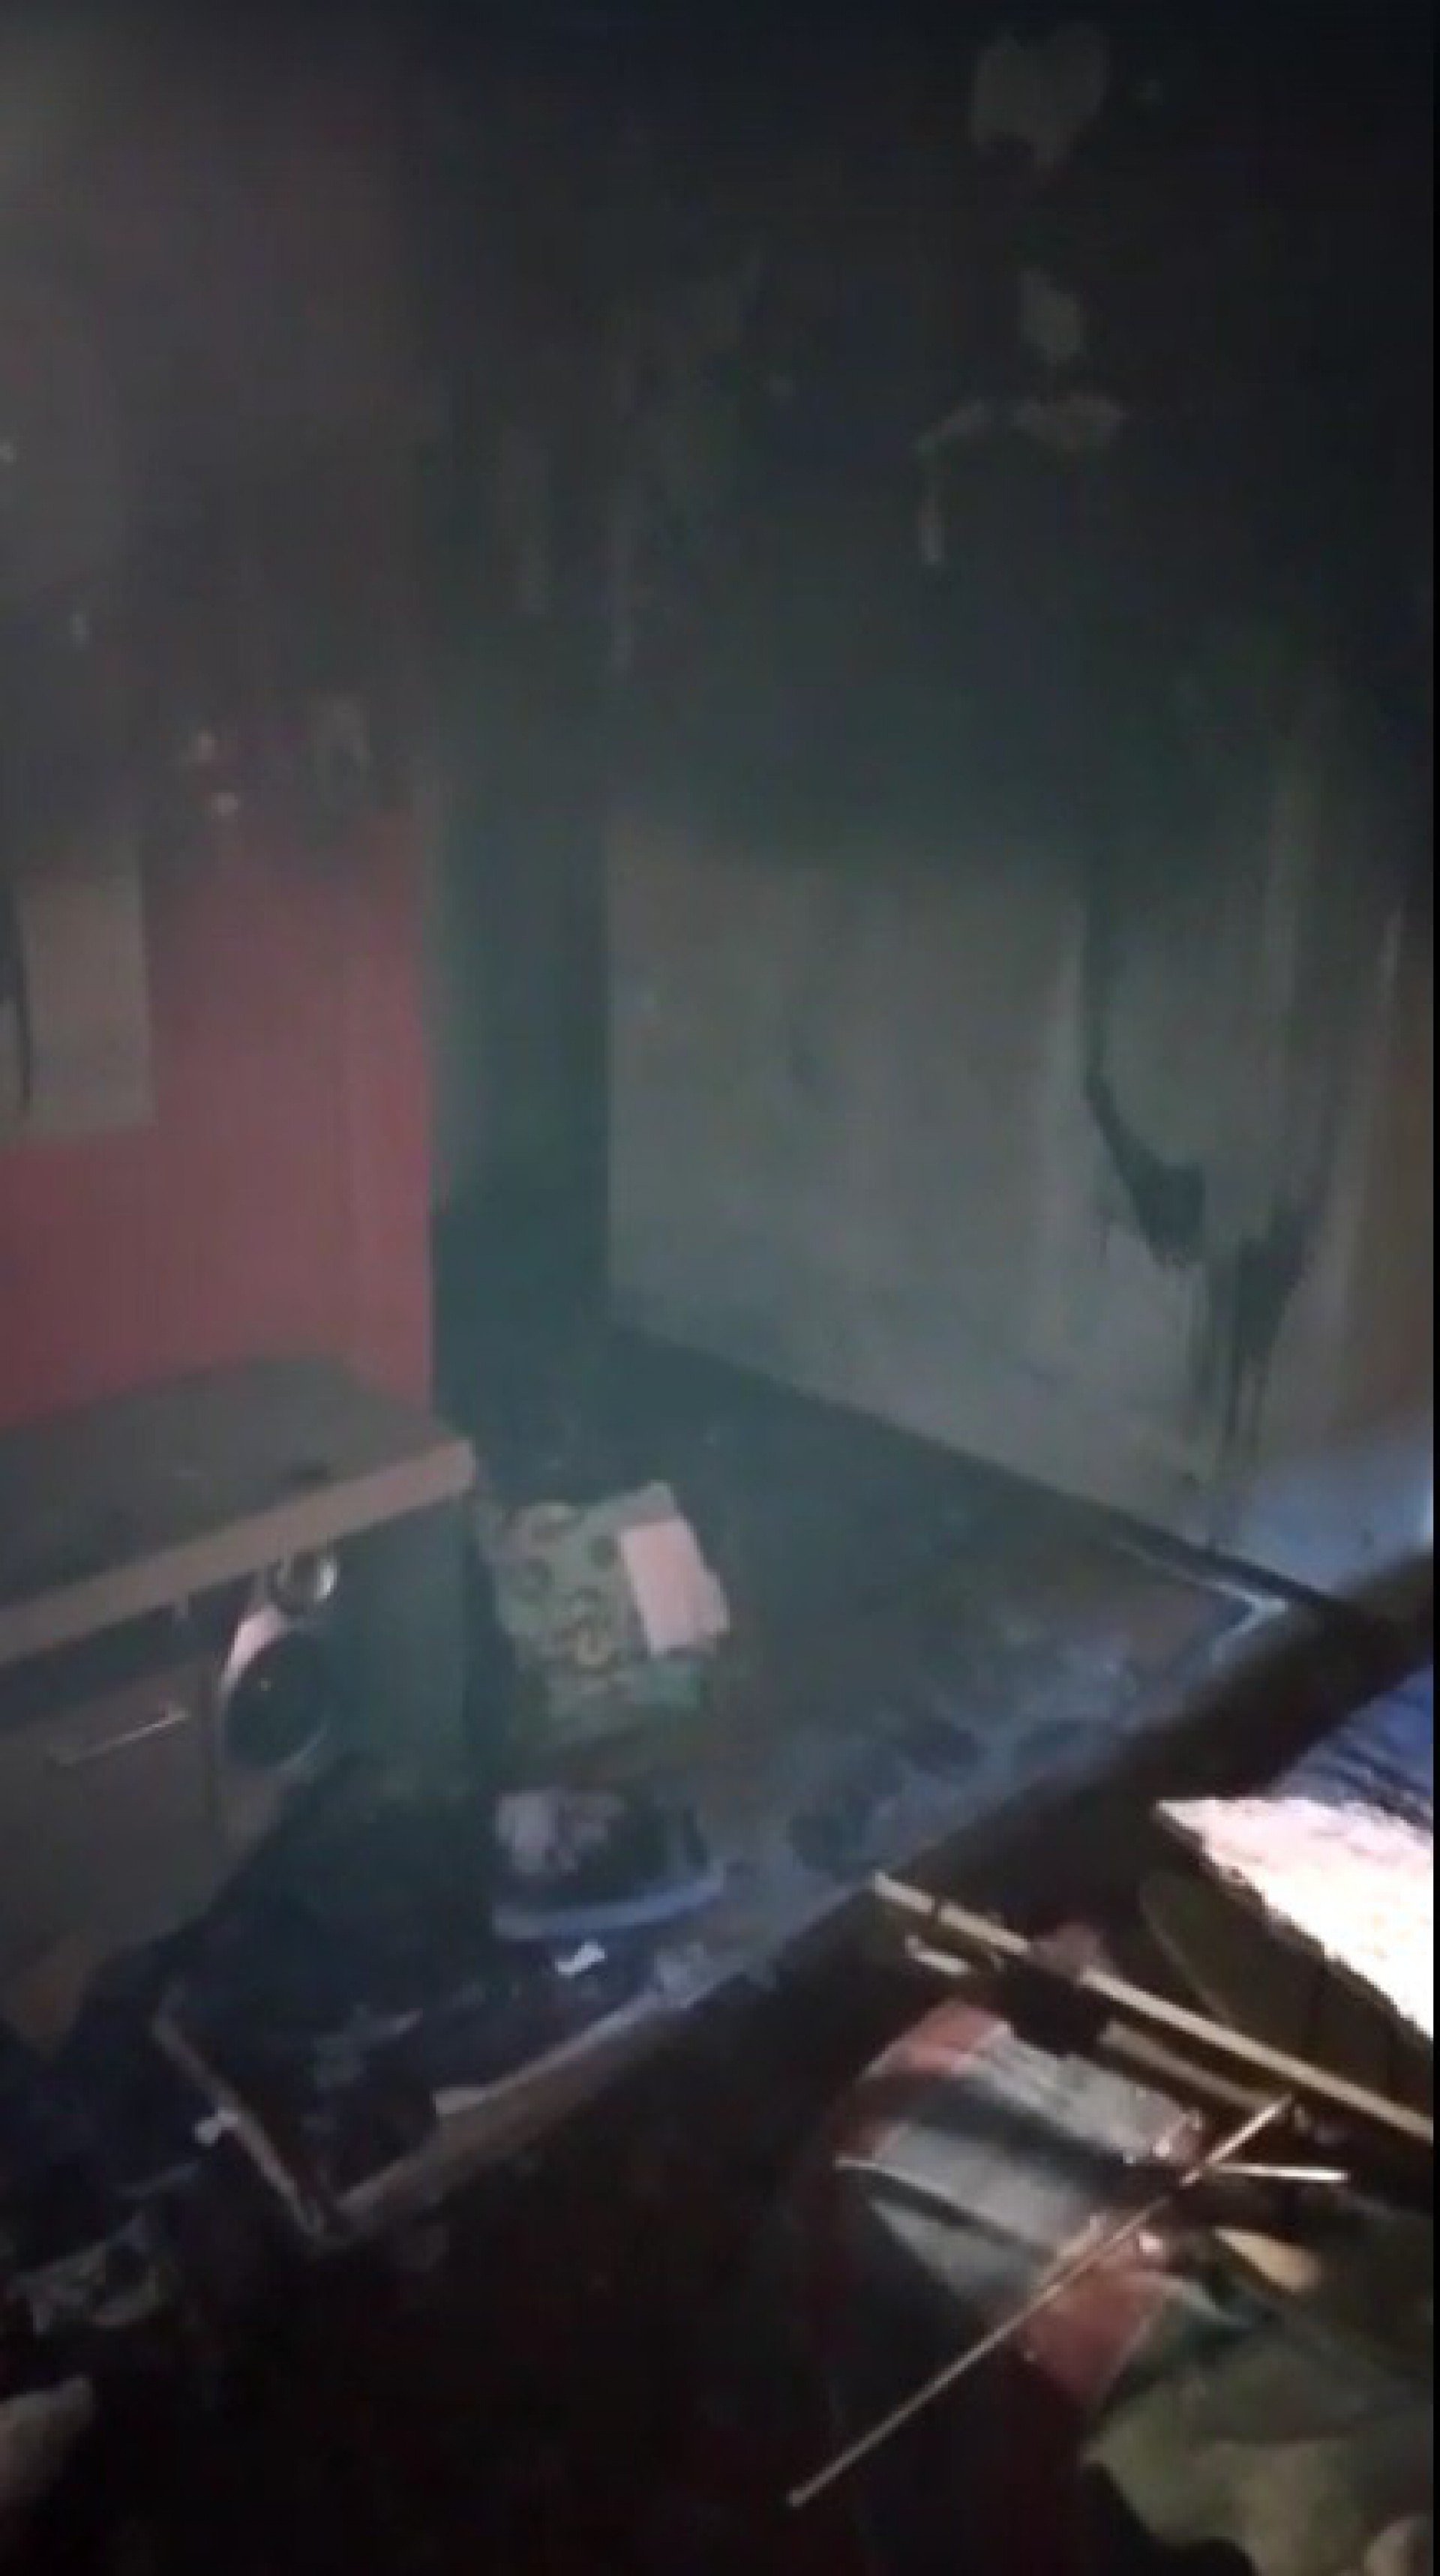 Casa onde jovem vive na localidade conhecida como Roupa Suja, na Rocinha, ficou completamente queimada pelas chamas  - Reprodução de vídeo